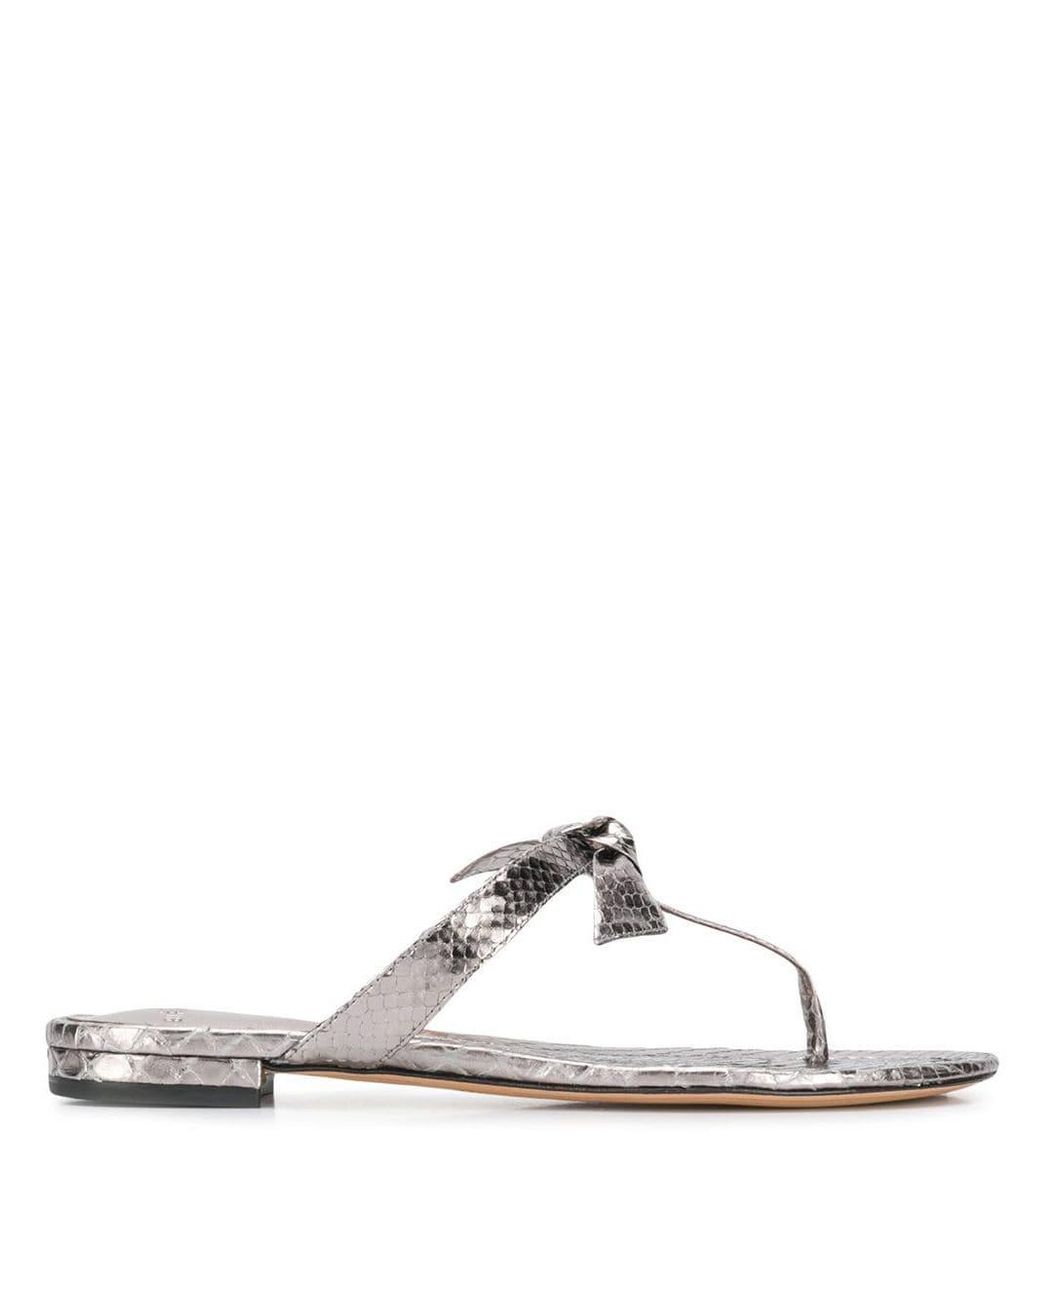 Alexandre Birman Bow Detail Flip Flops in Silver (Metallic) - Lyst